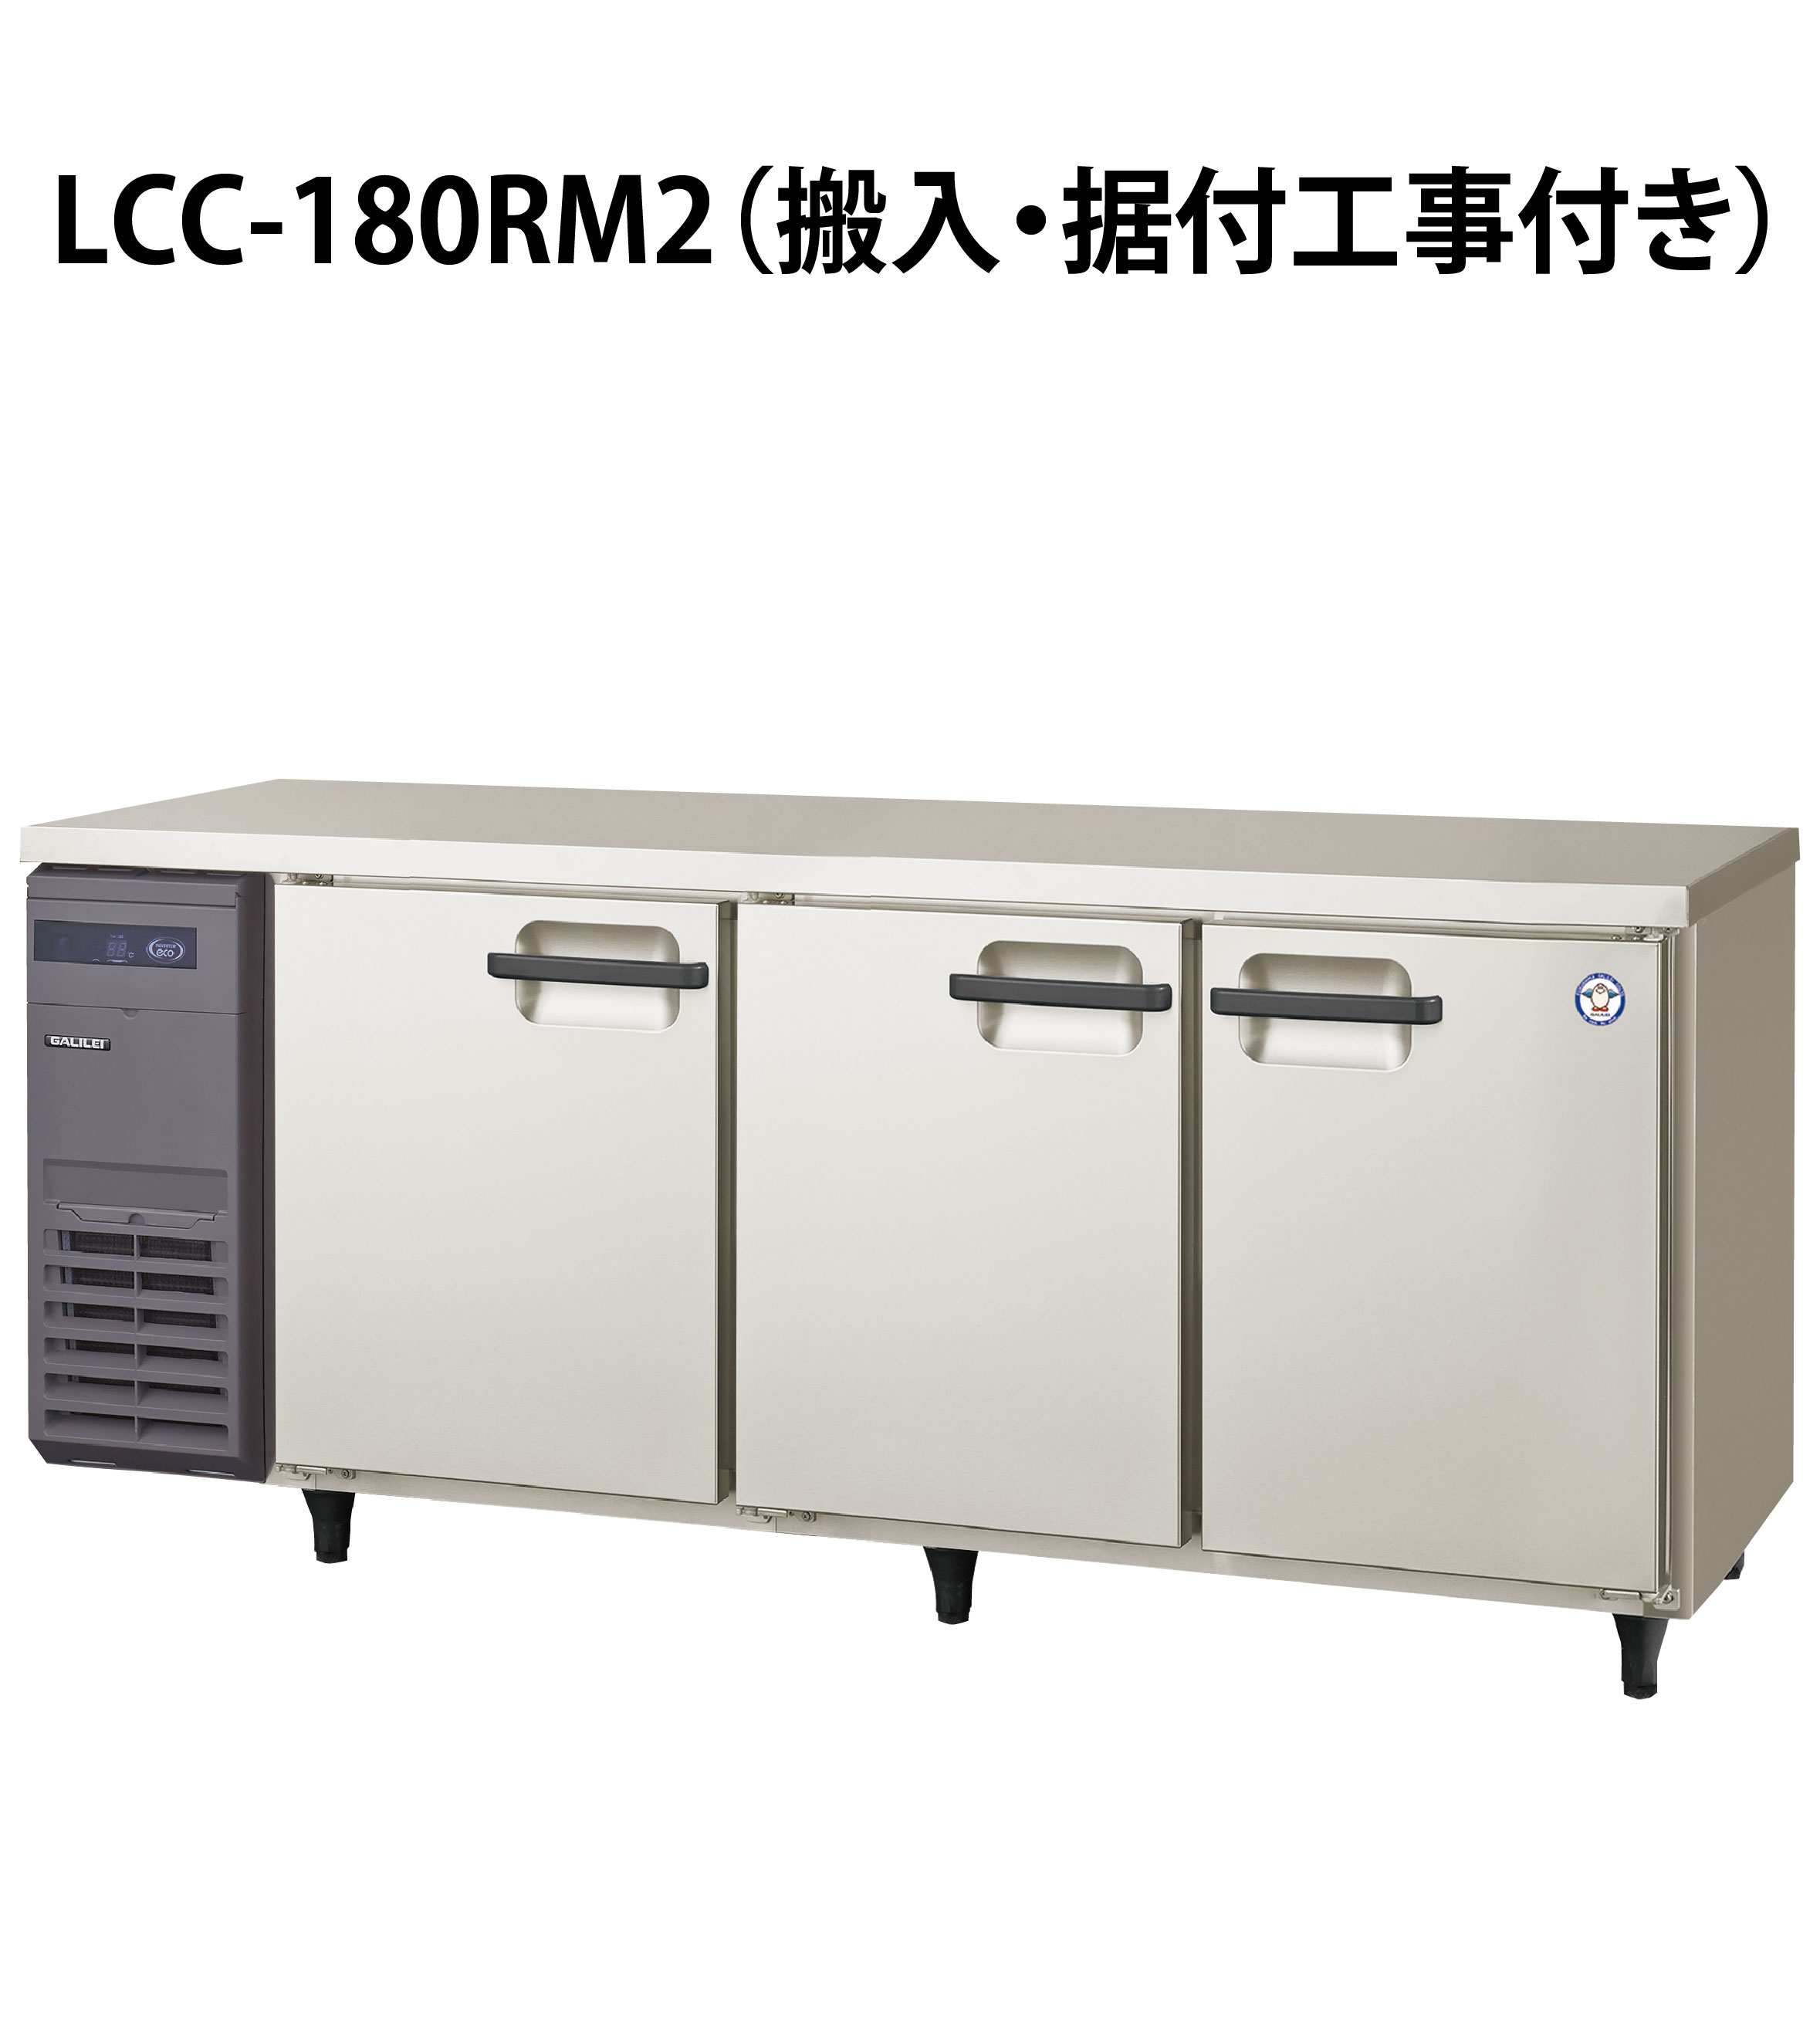 ブランド品専門の Lキッチンドットコムフクシマガリレイ コールドテーブル冷蔵庫 LCC-180RM2-F センターフリータイプ 単相100V 業務用  新品 送料無料